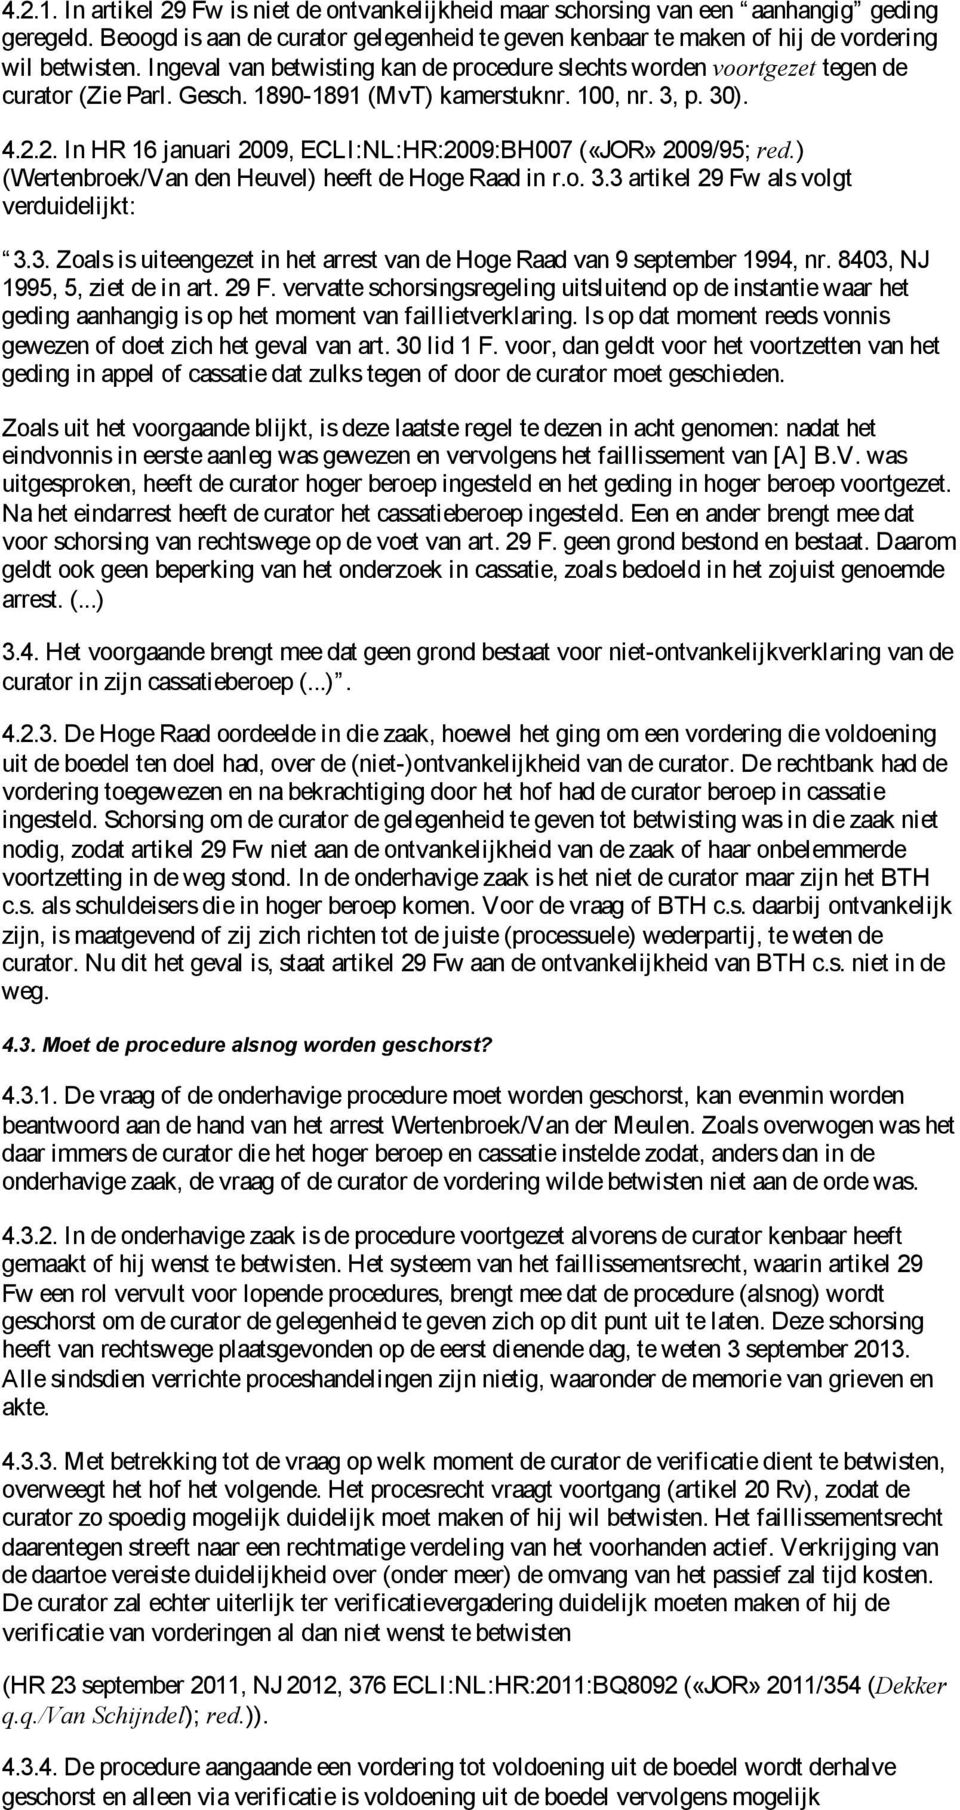 2. In HR 16 januari 2009, ECLI:NL:HR:2009:BH007 («JOR» 2009/95; red.) (Wertenbroek/Van den Heuvel) heeft de Hoge Raad in r.o. 3.